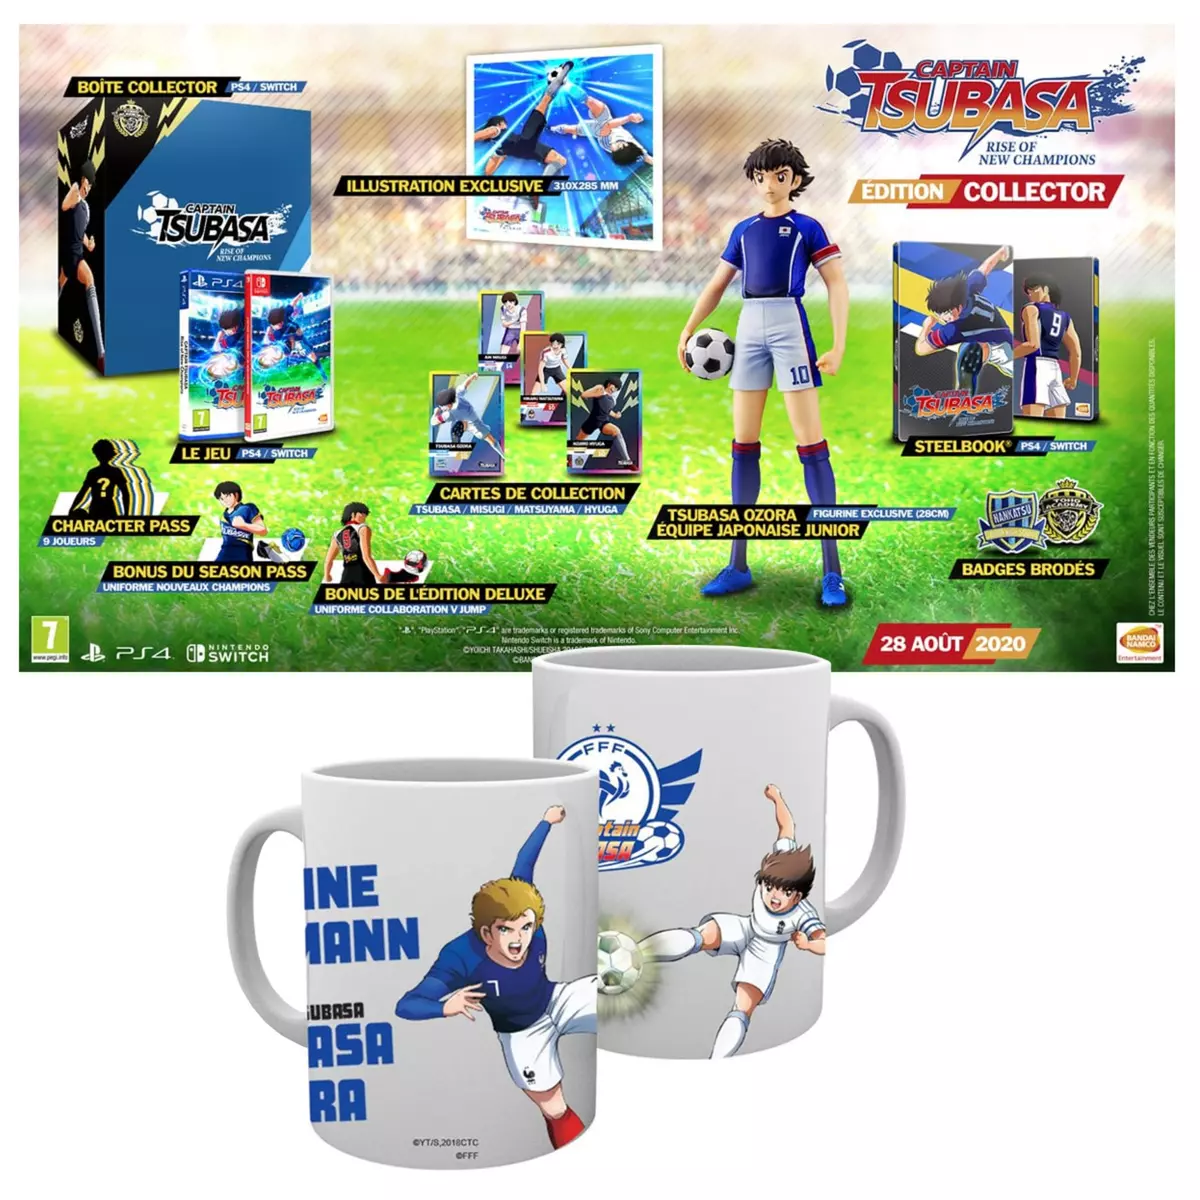 Captain Tsubasa Edition Collector PS4 + Mug Griezmann